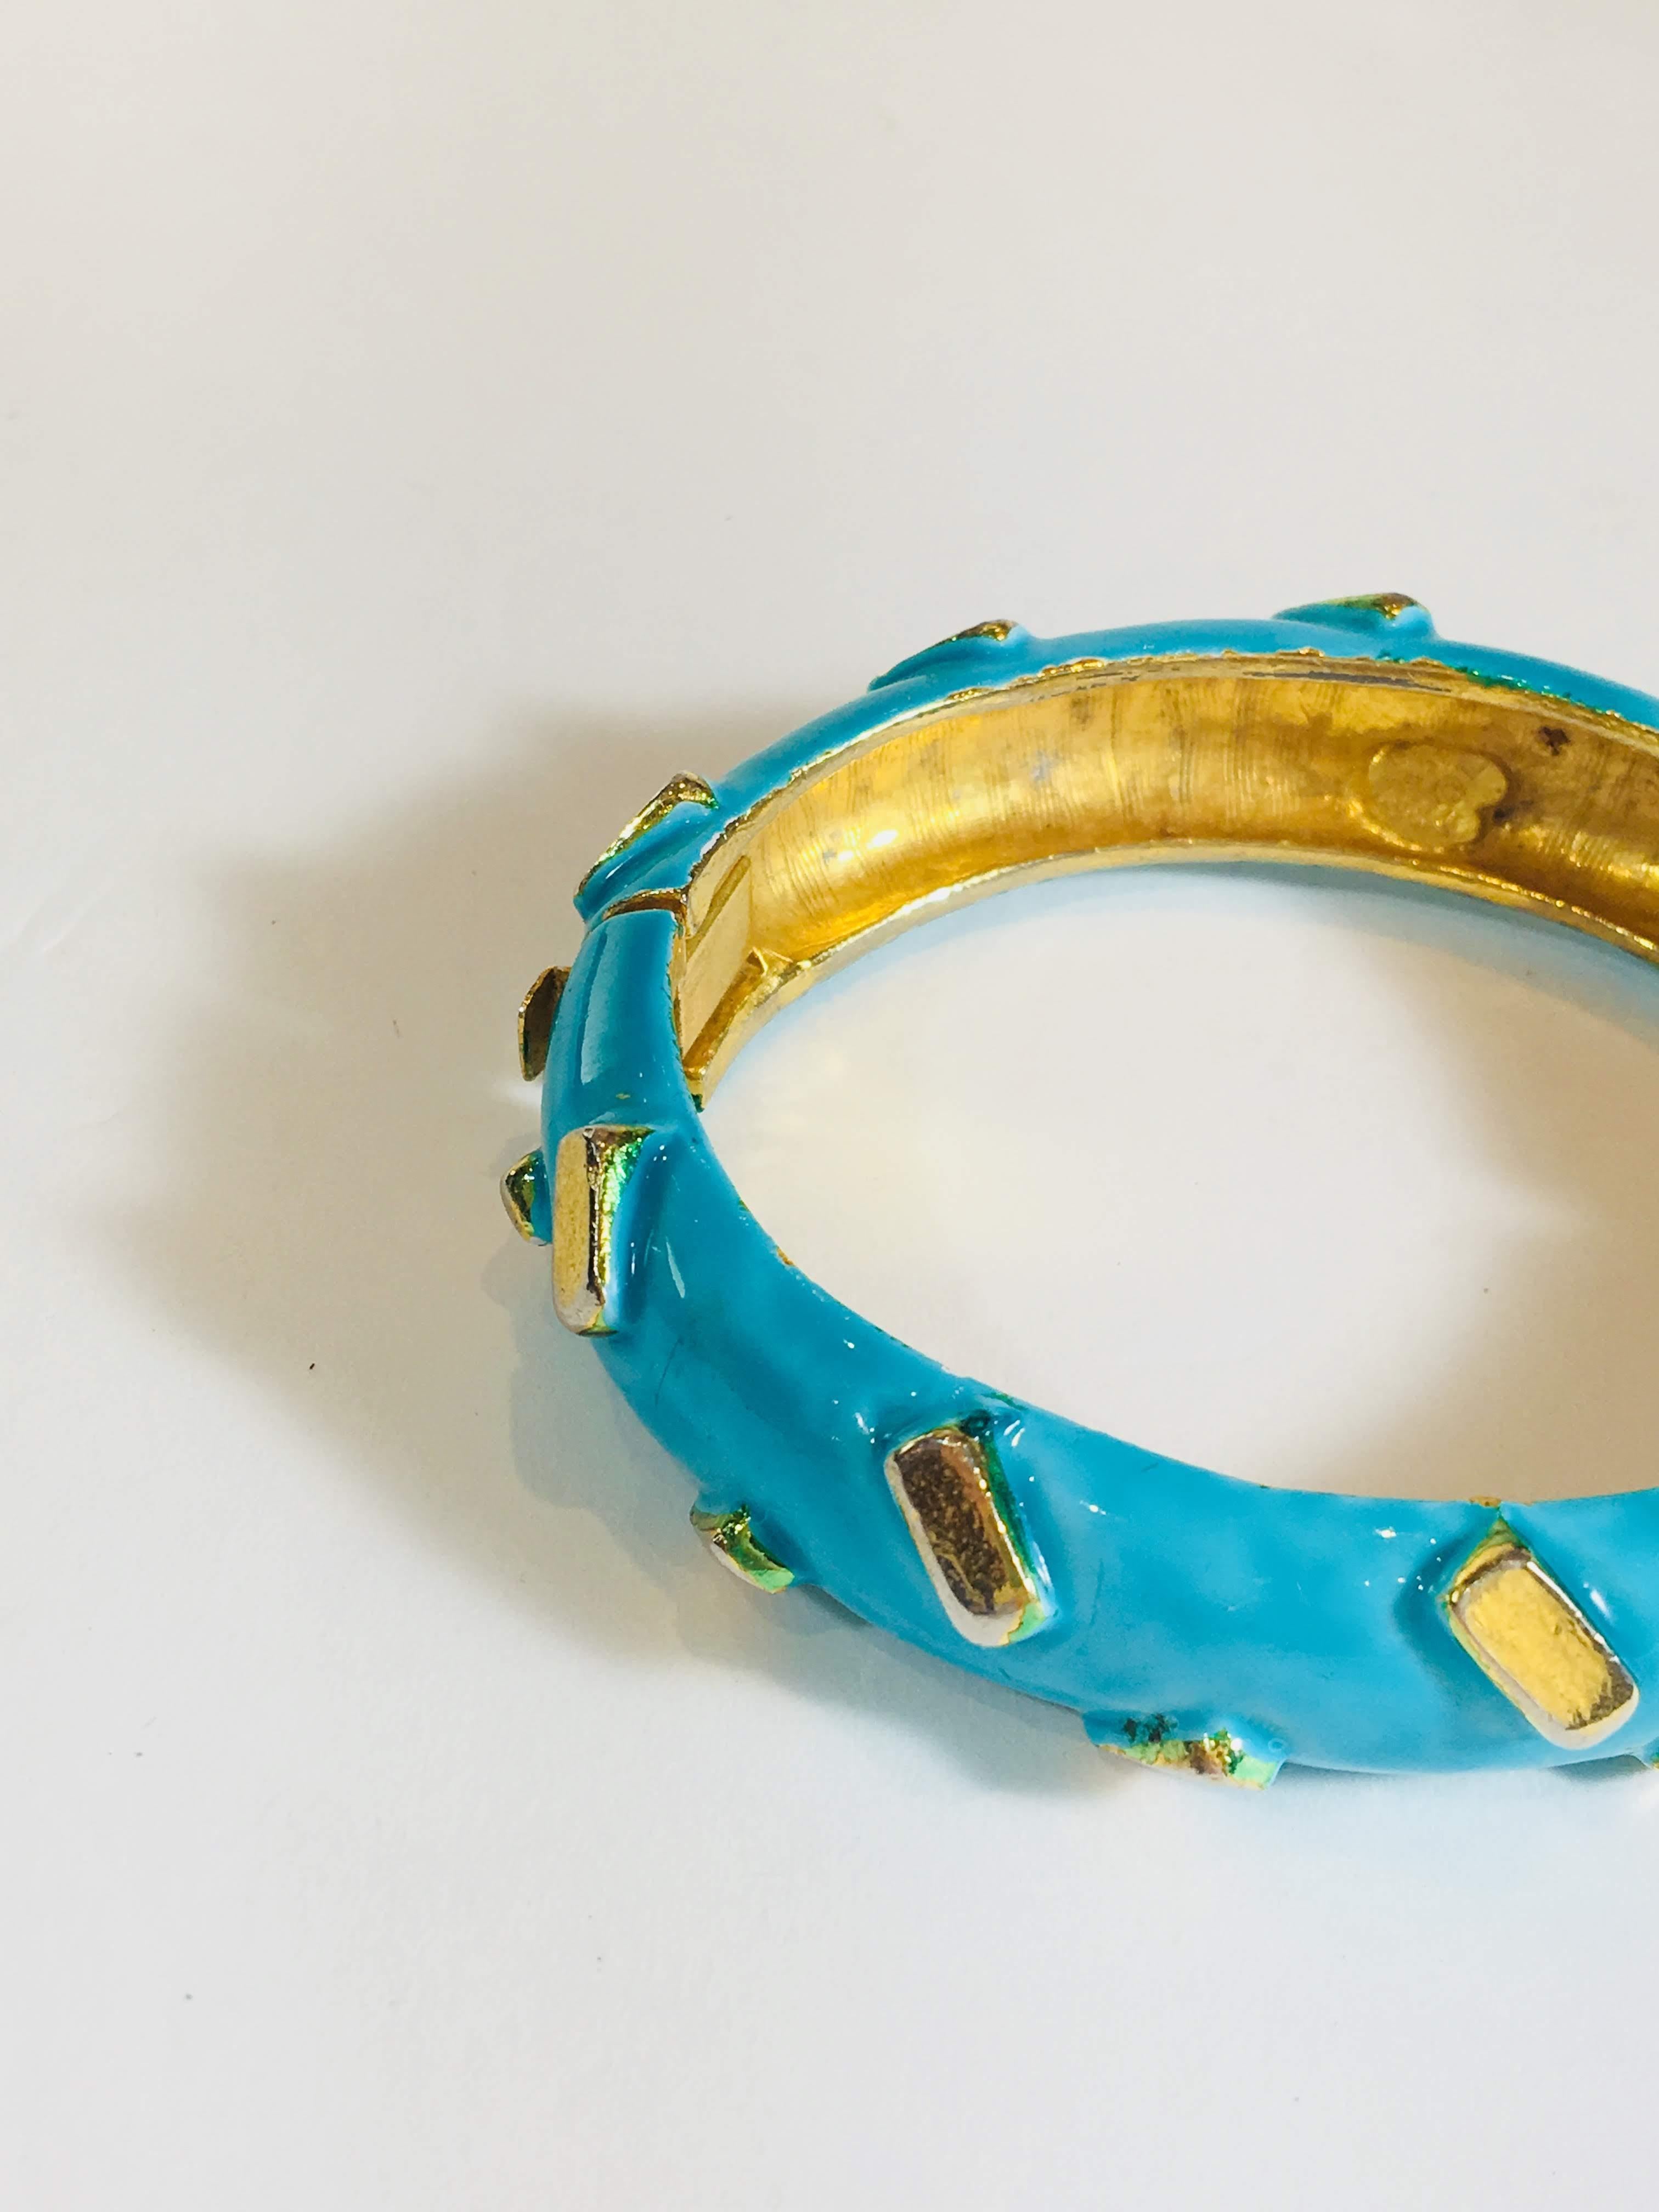 Turquoise and Gold Enamel Bangle with Hinge Opening